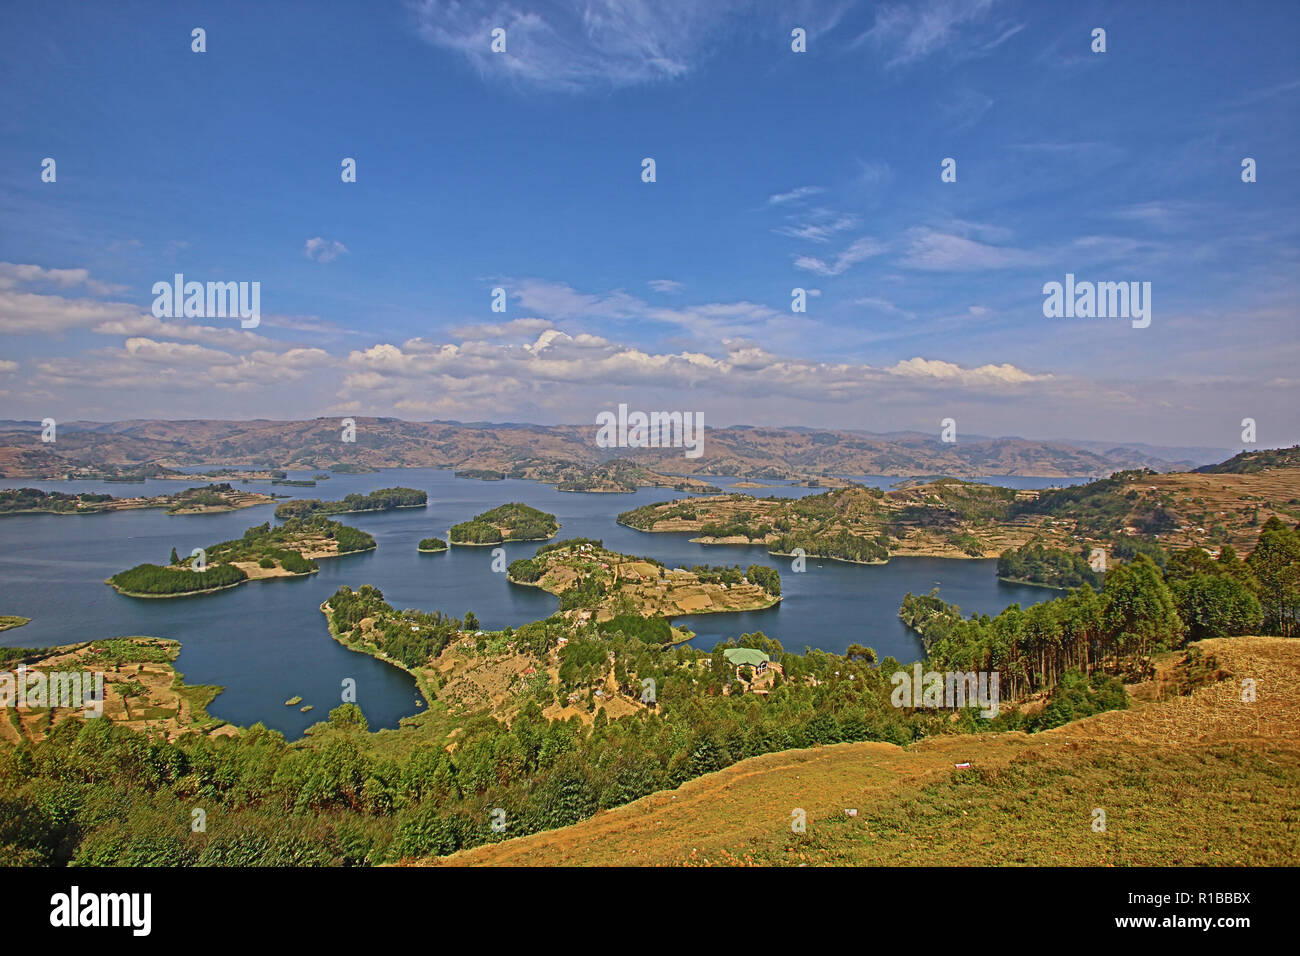 landscape of Lake Bunyonyi, Uganda, Africa Stock Photo